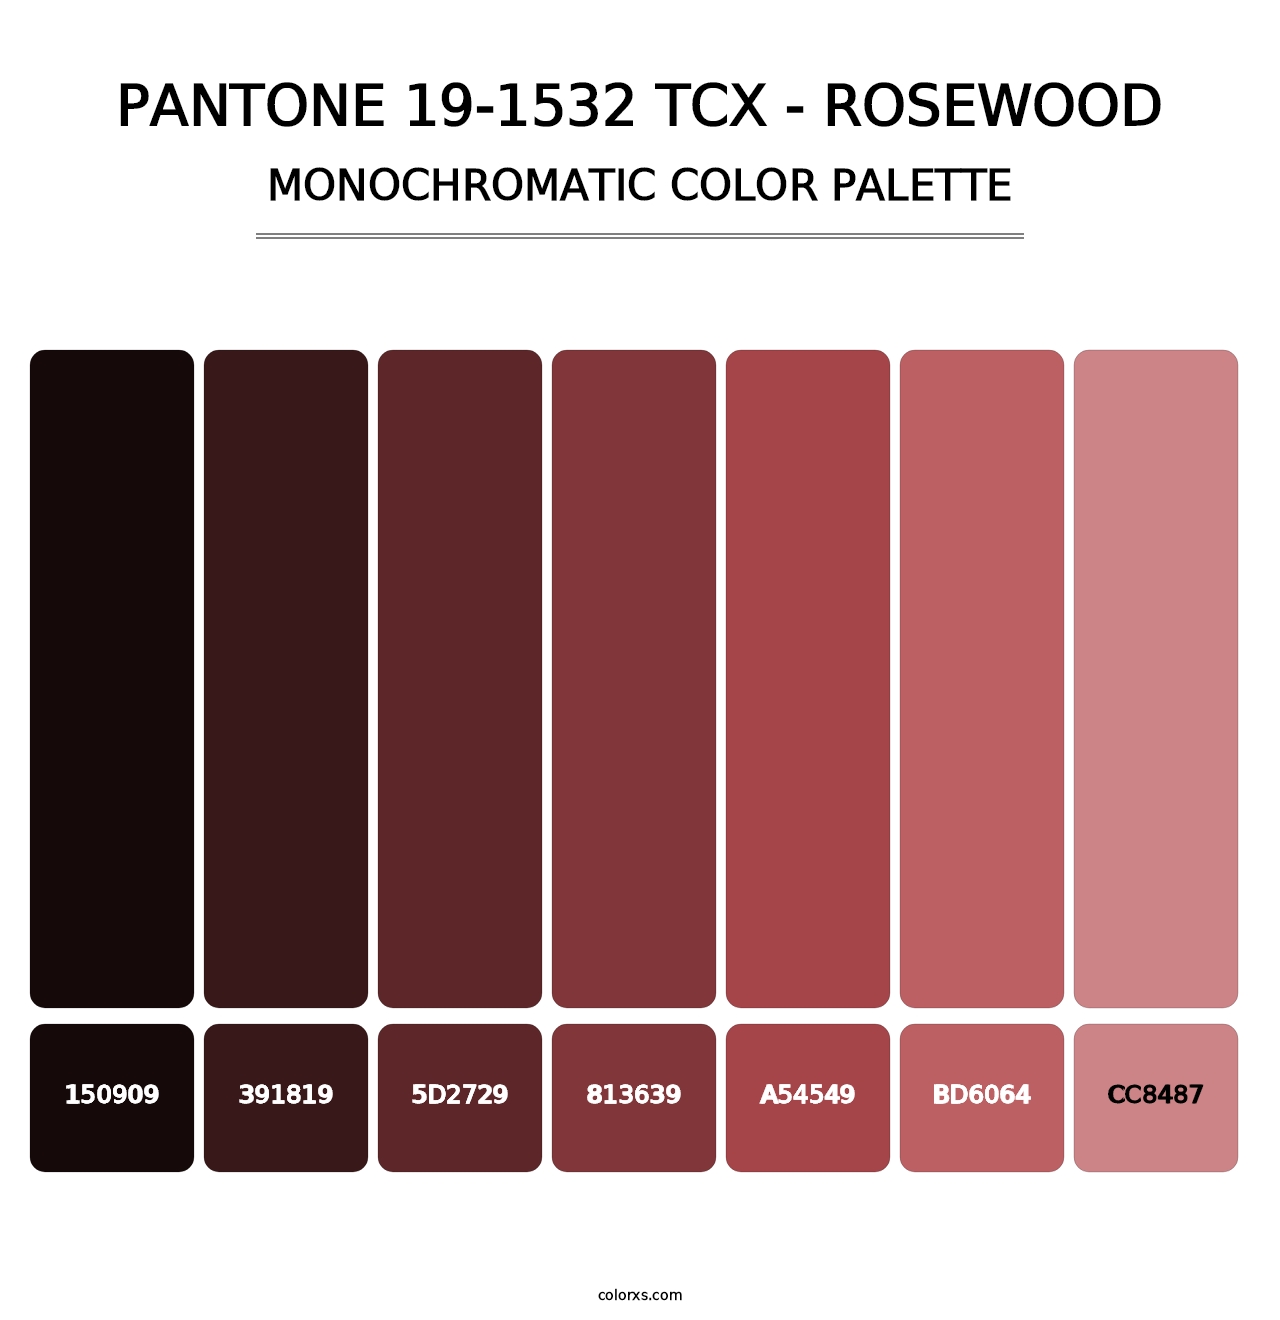 PANTONE 19-1532 TCX - Rosewood - Monochromatic Color Palette